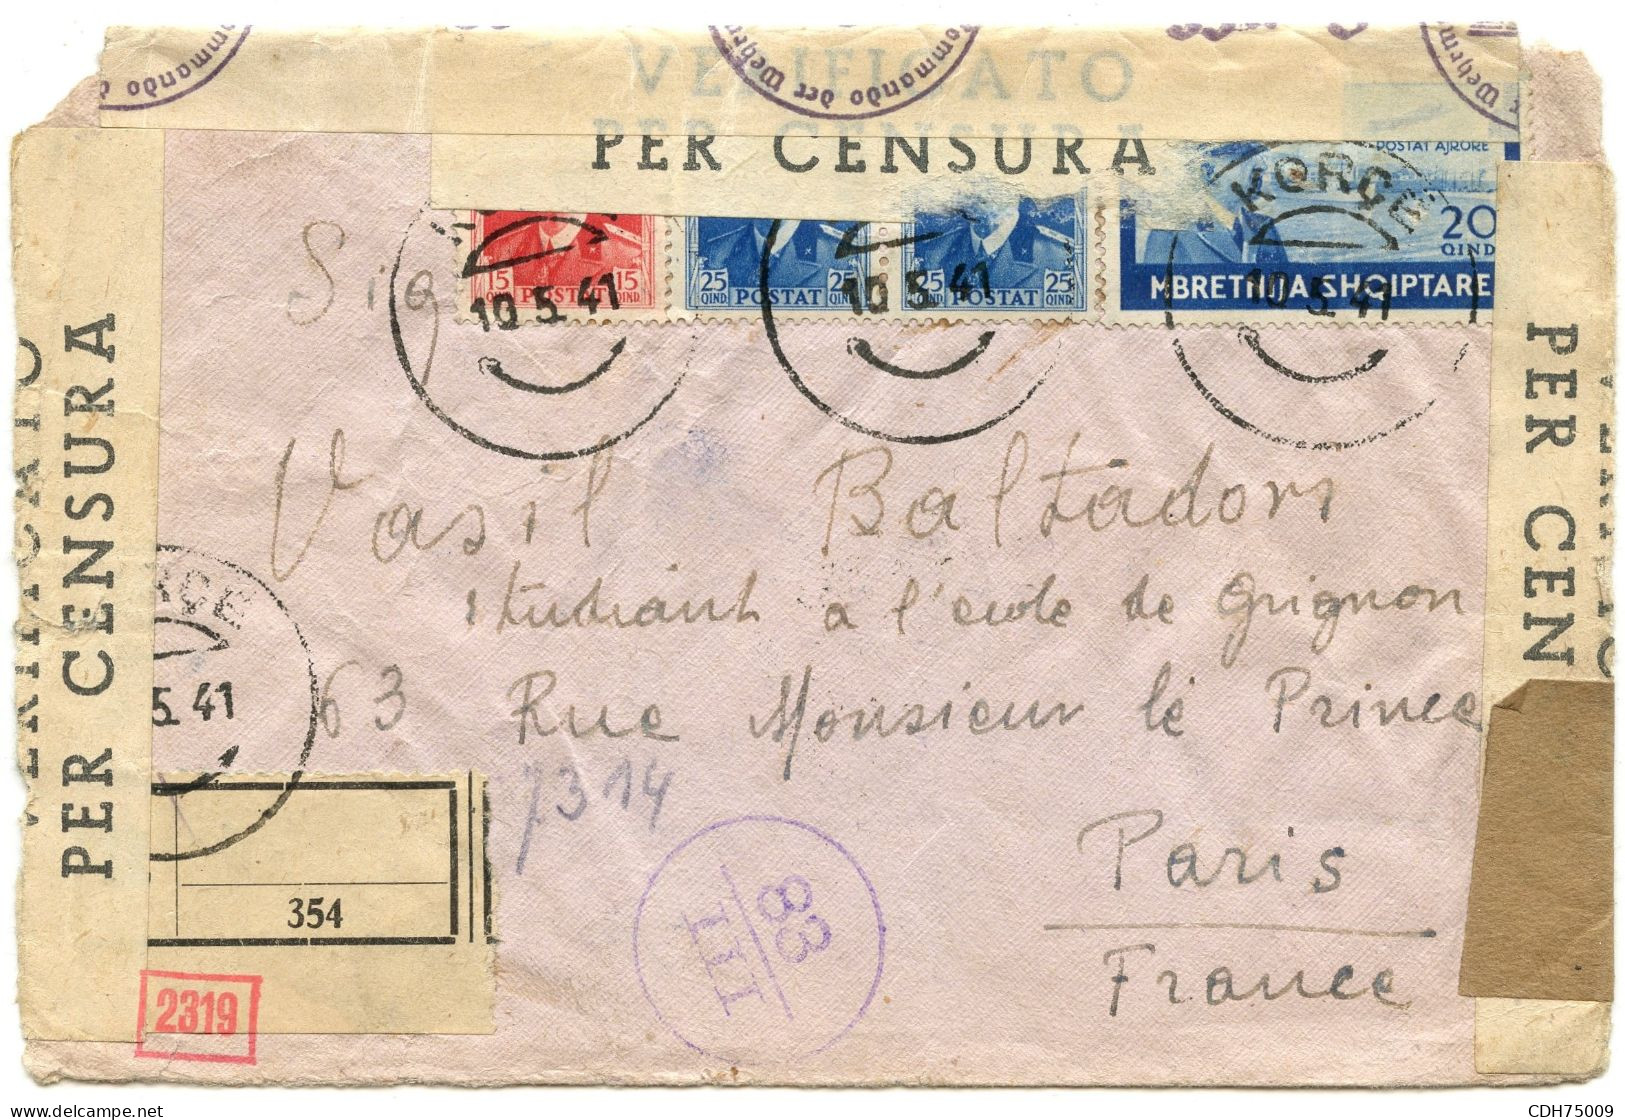 ITALIE - LETTRE RECOMMANDEE CENSUREE DE KORCE POUR PARIS, 1941 - Albanien